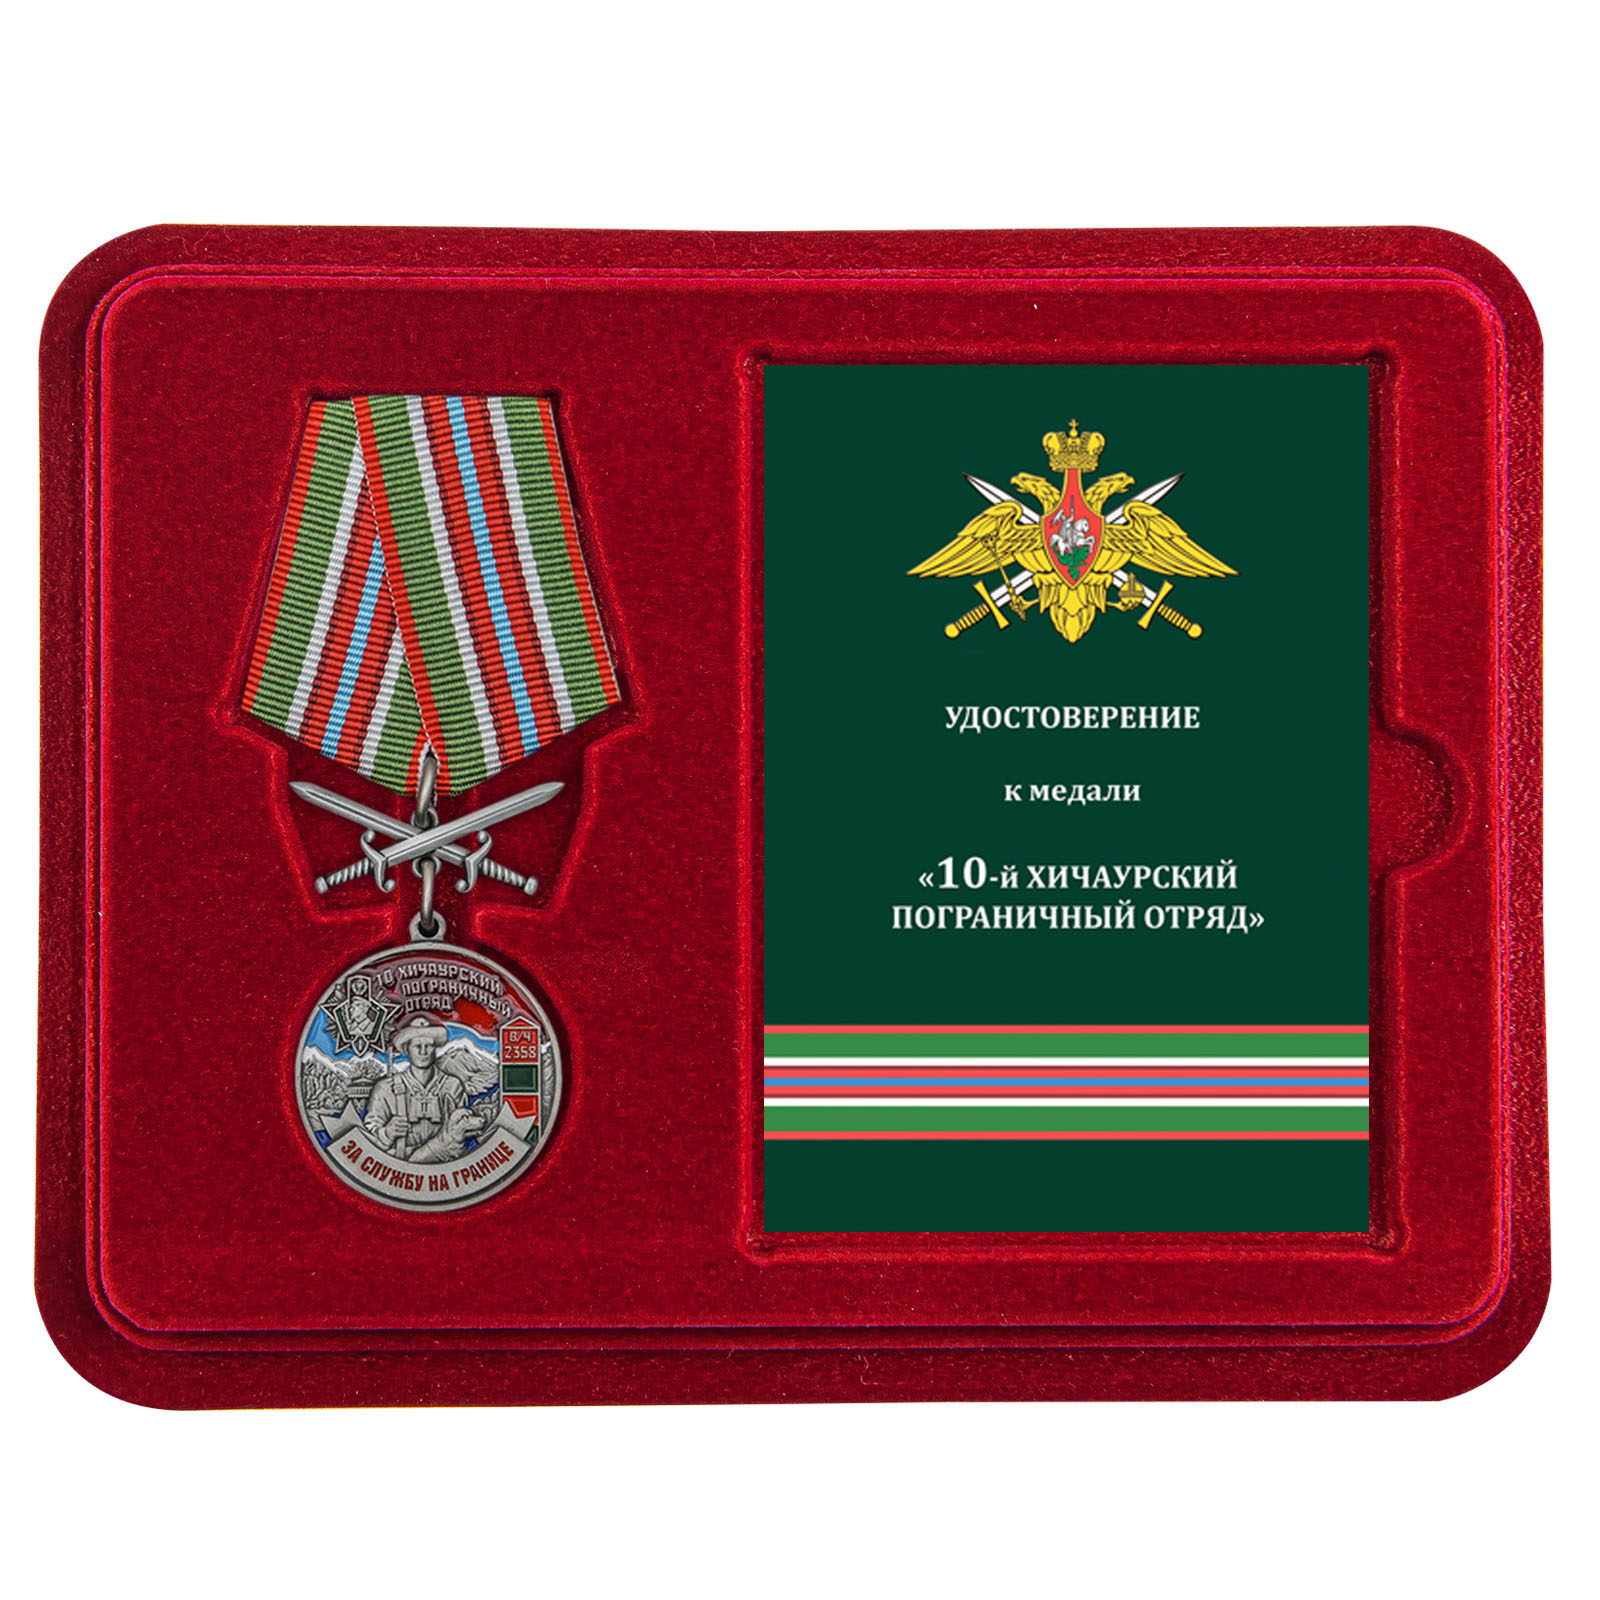 Купить медаль За службу в Хичаурском пограничном отряде онлайн